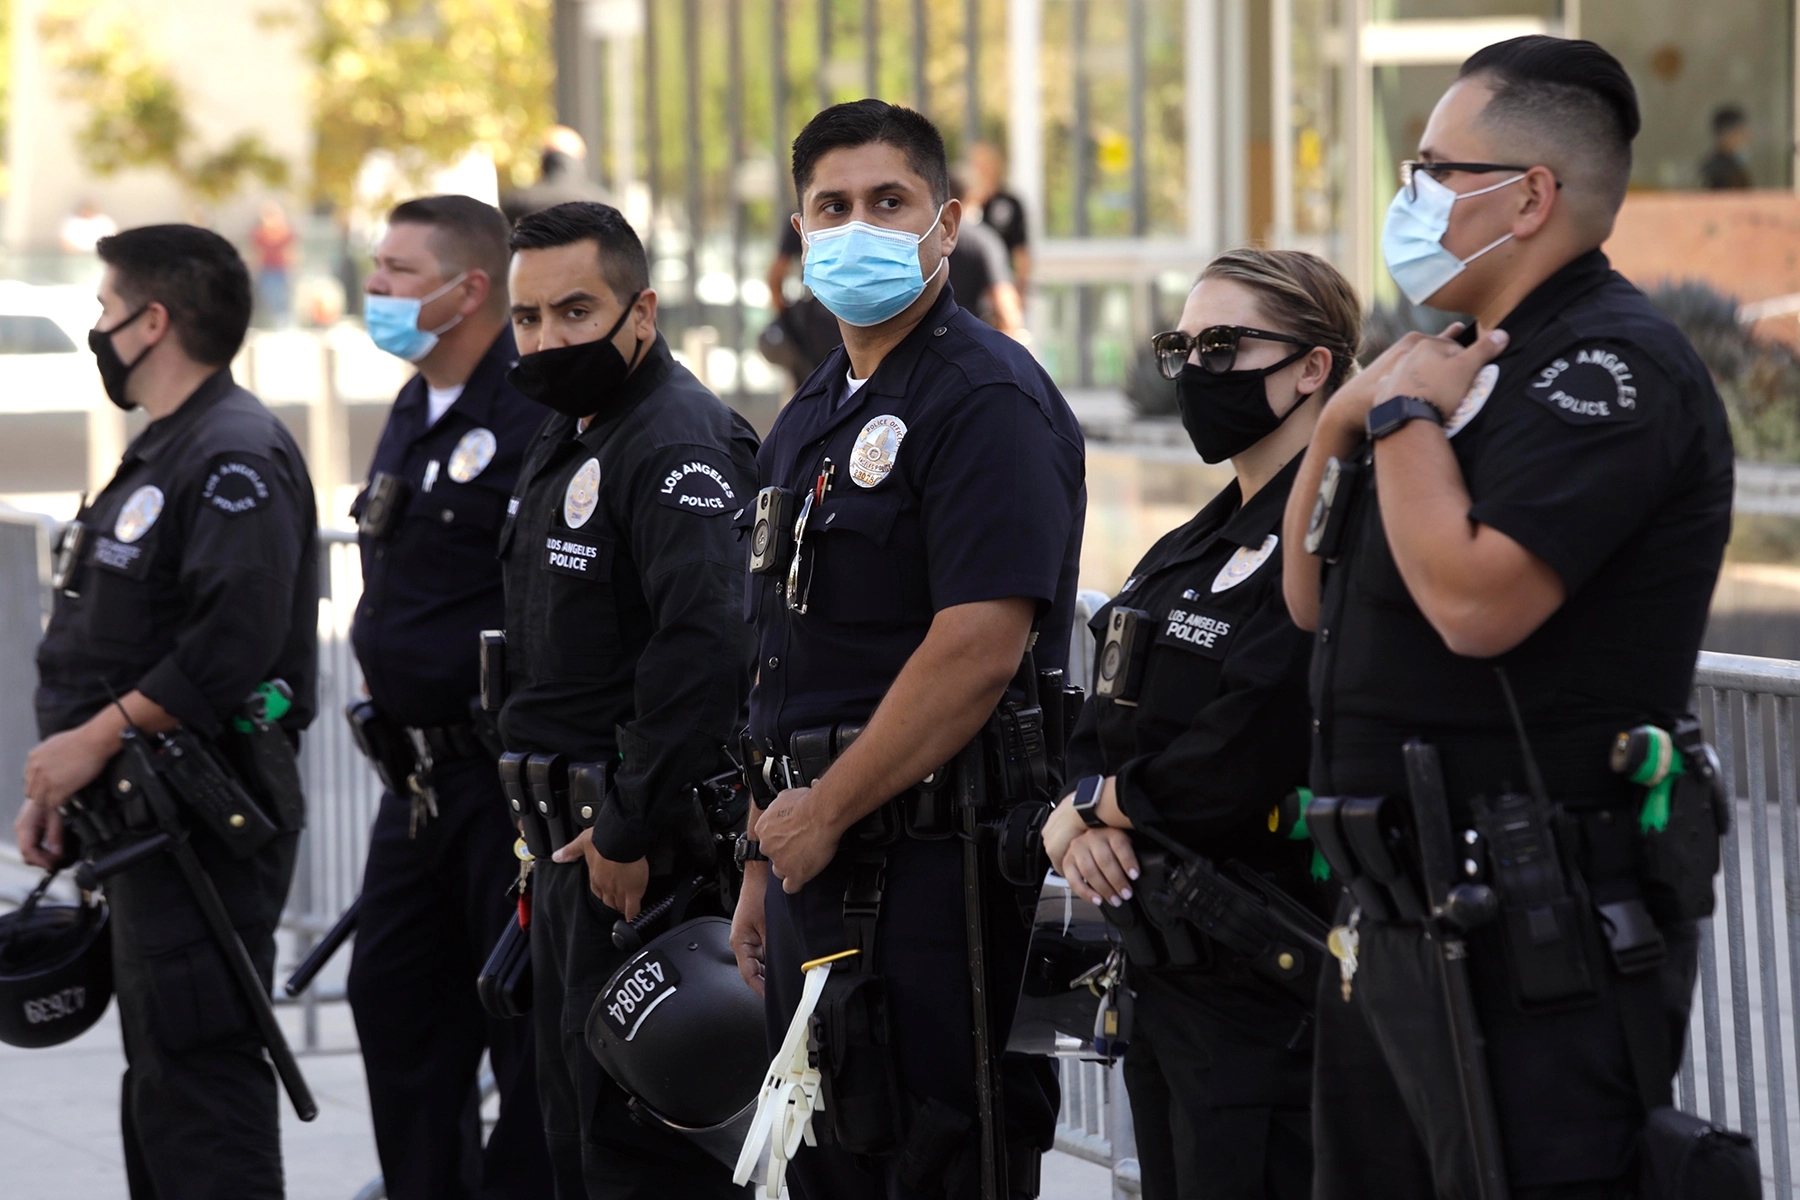 Λος Άντζελες: Στα ύψη το έγκλημα και οι ένοπλες ληστείες – Σημαντική αύξηση και στο Χόλυγουντ